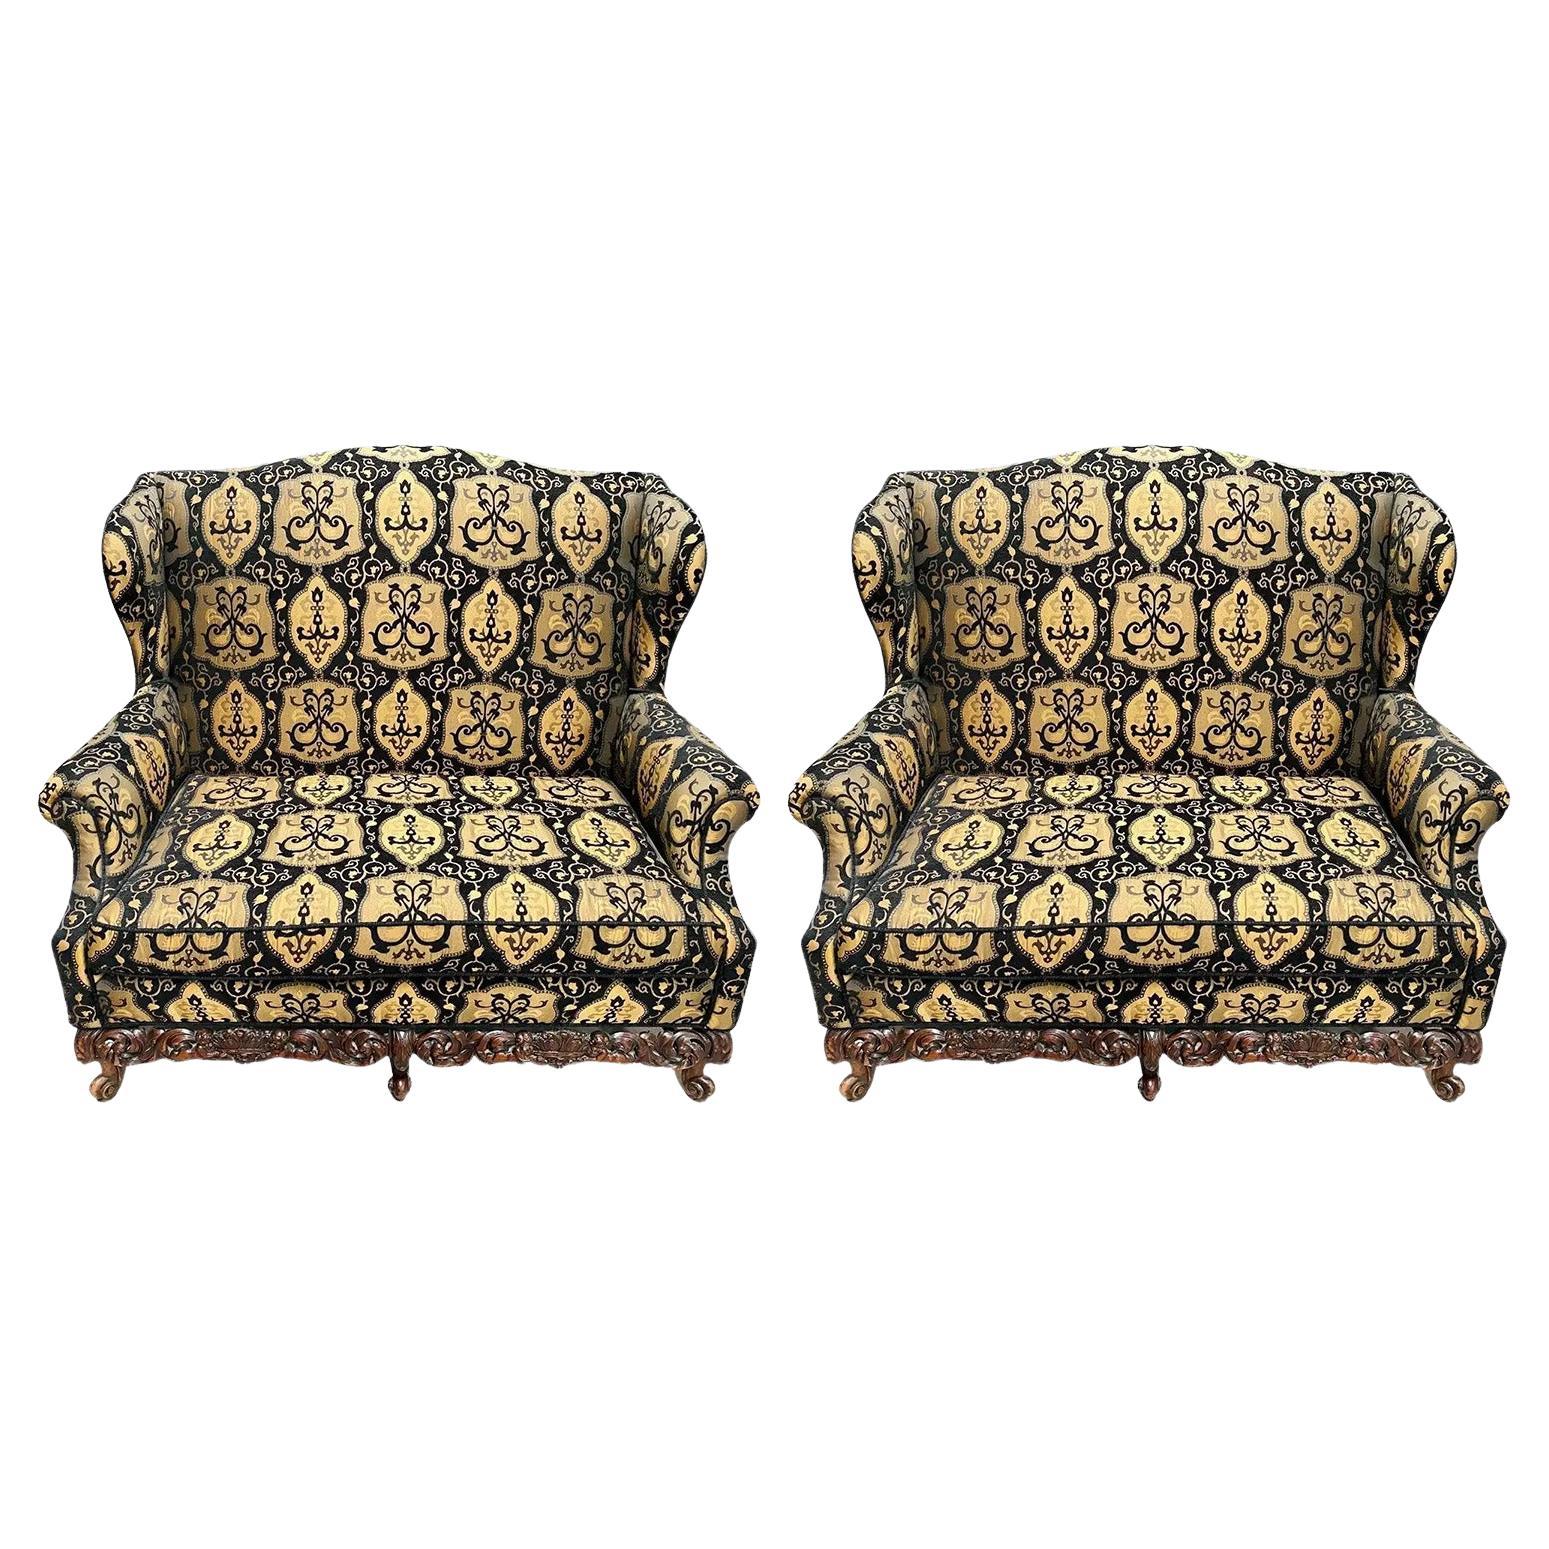 Italienisches Settee oder Sofa im Rokoko-Revival-Stil, schwarze und beige Polsterung, ein Paar